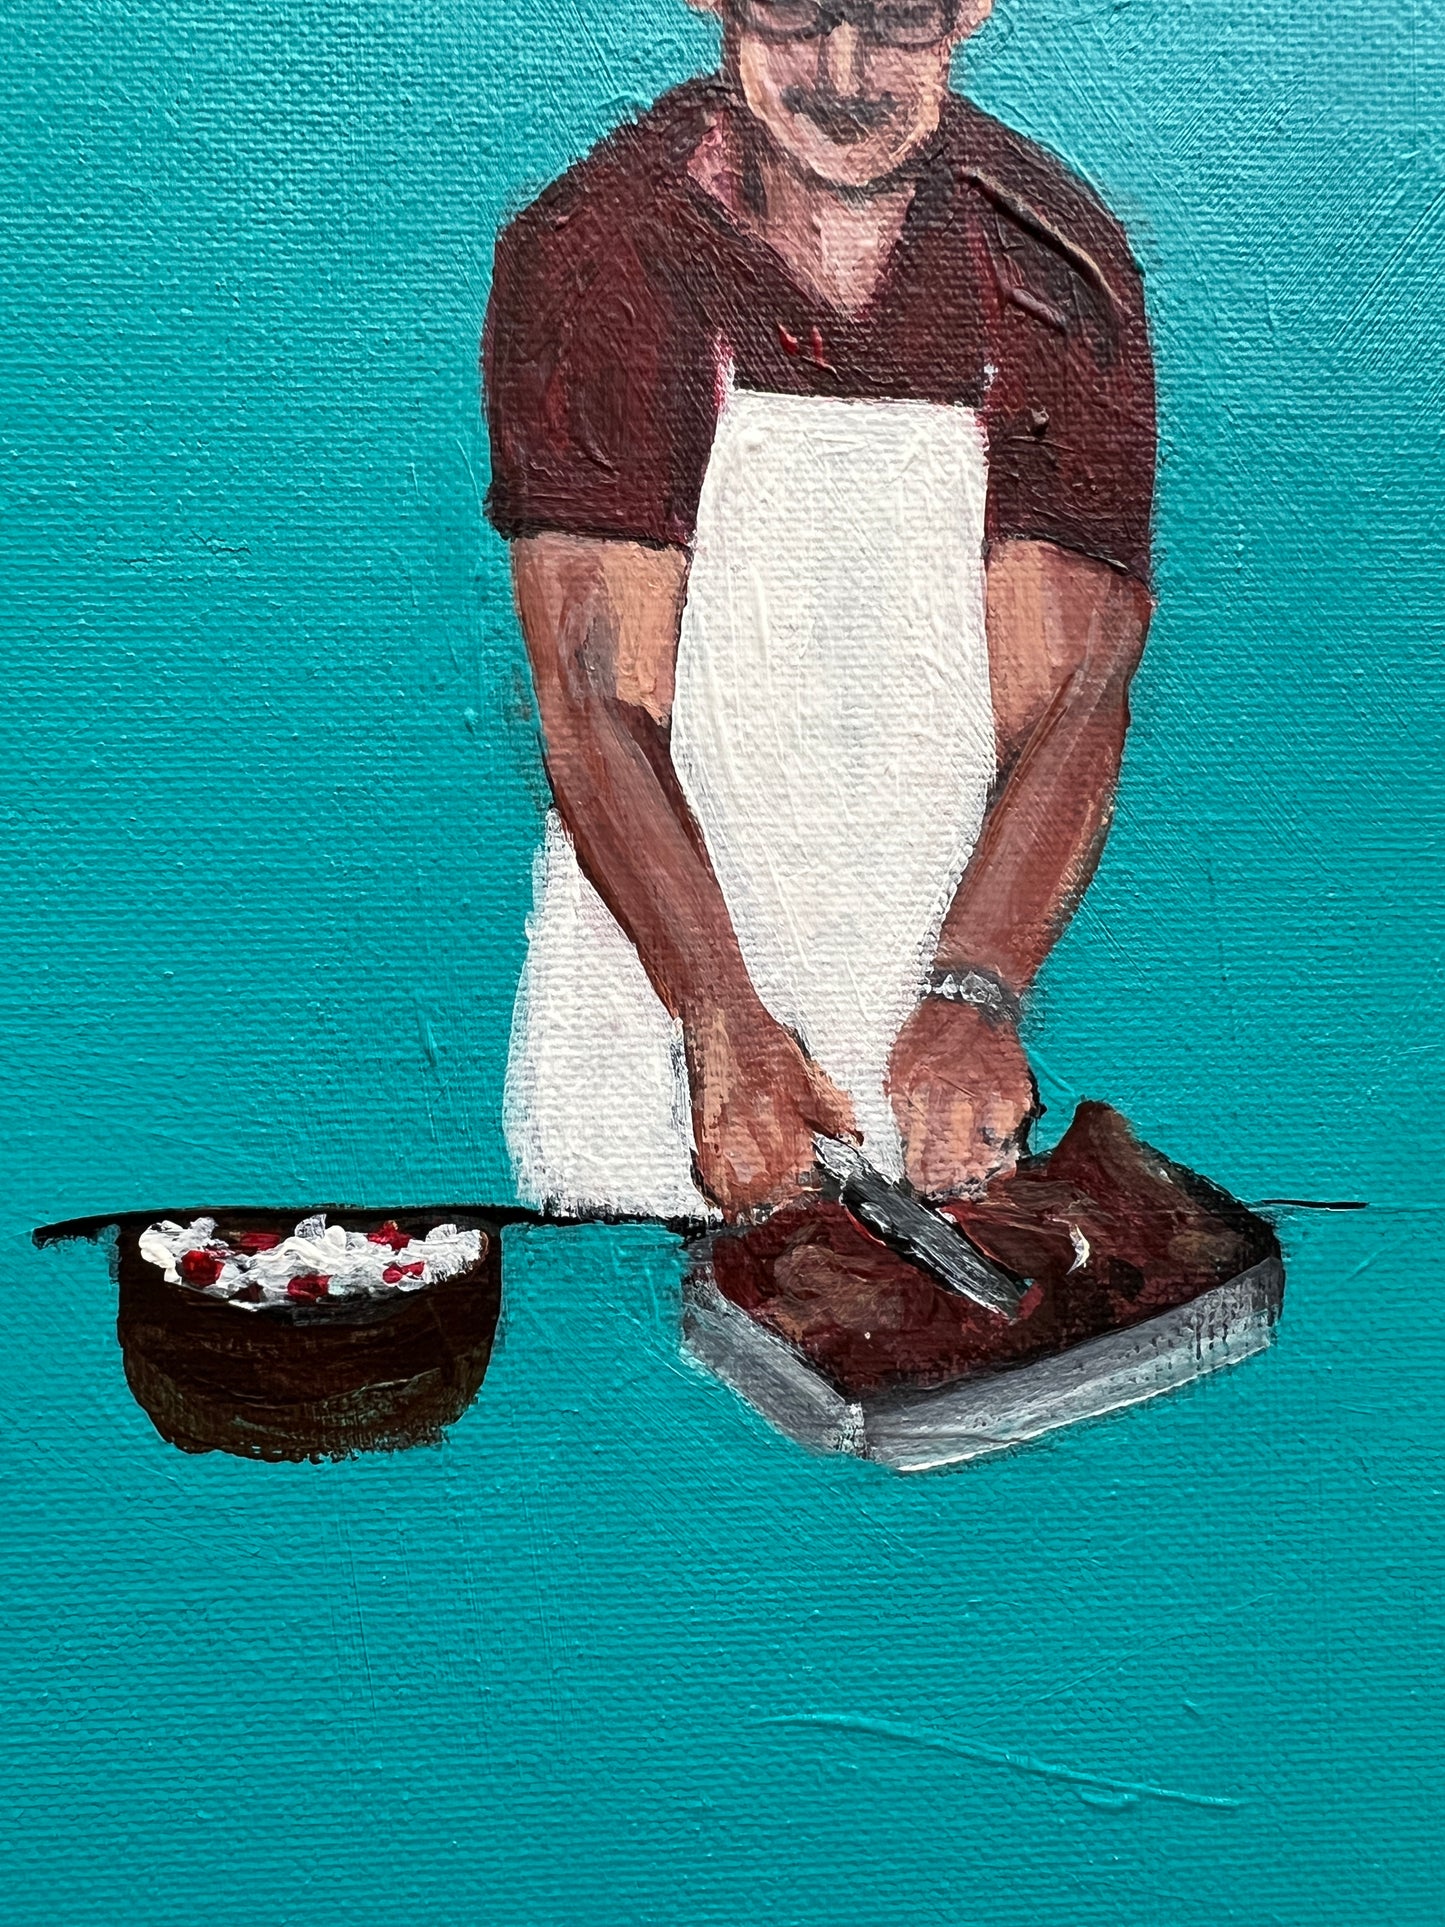 El Chef- The Chef